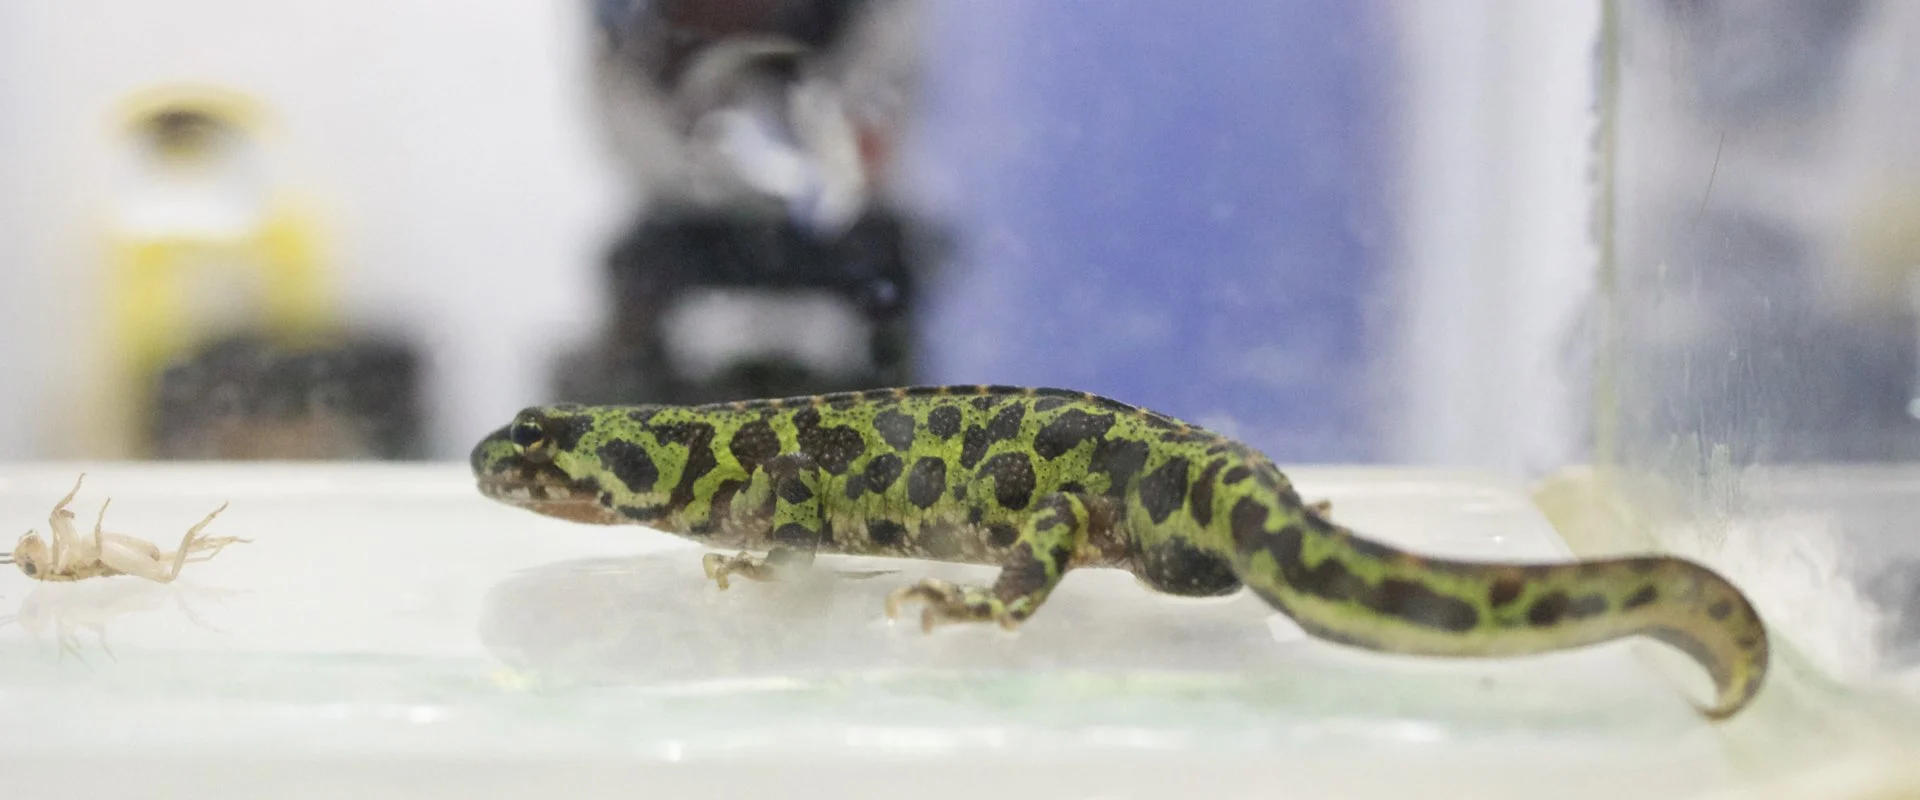 Ein Salamander, der auf dem Boden eines trockenen Acryltanks sitzt und nach links schaut, mit einer unscharfen Videokamera im Hintergrund